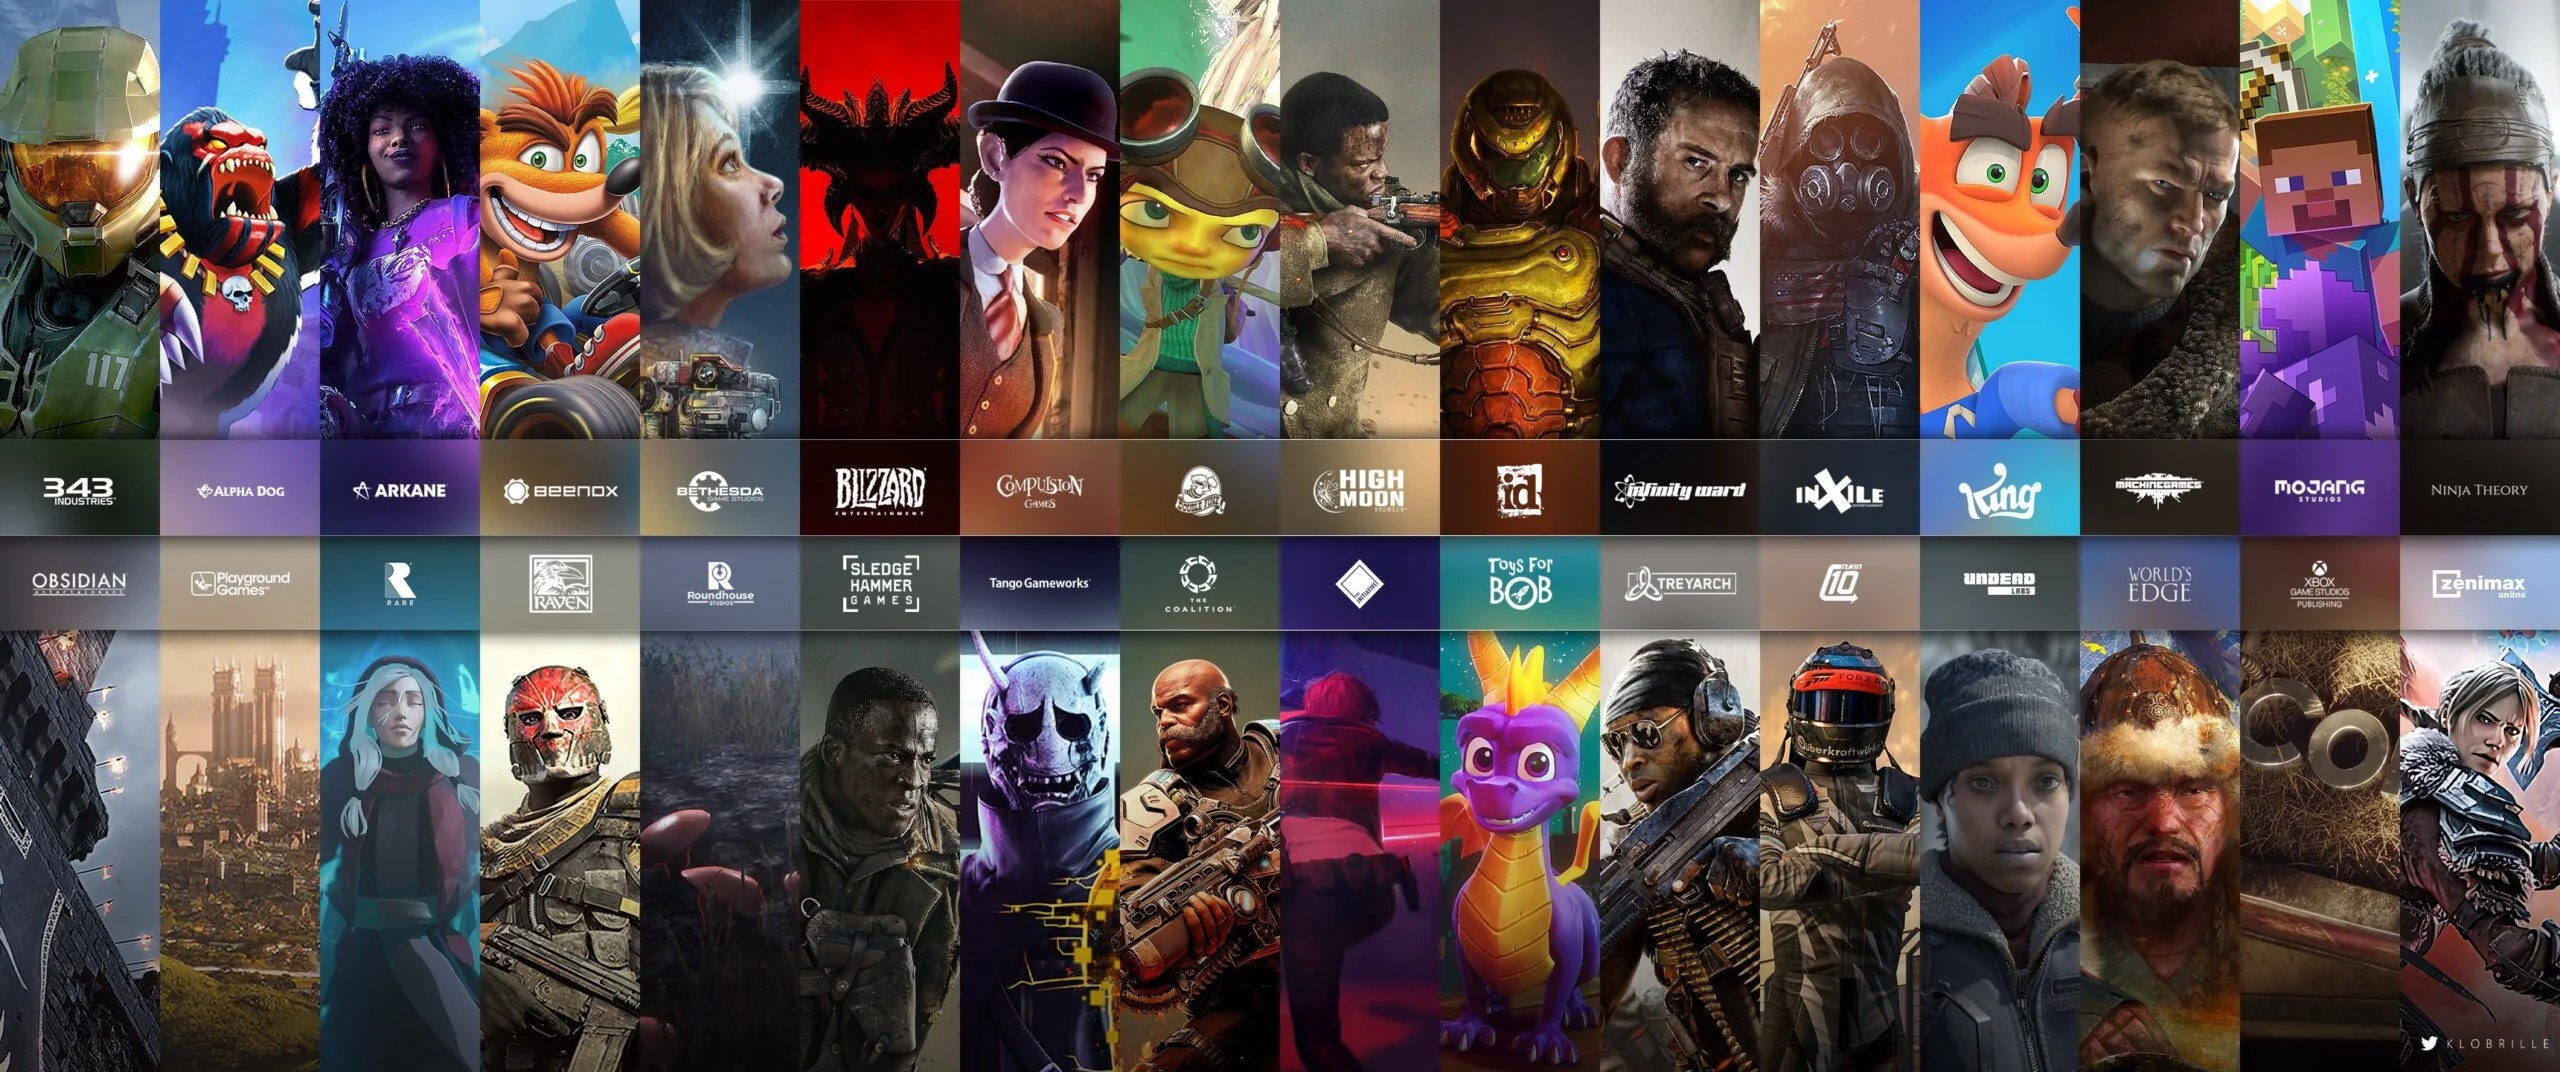 Xbox-Bethesda-Activision : une impressionnante galaxie de studios pour quadriller le jeu vidéo